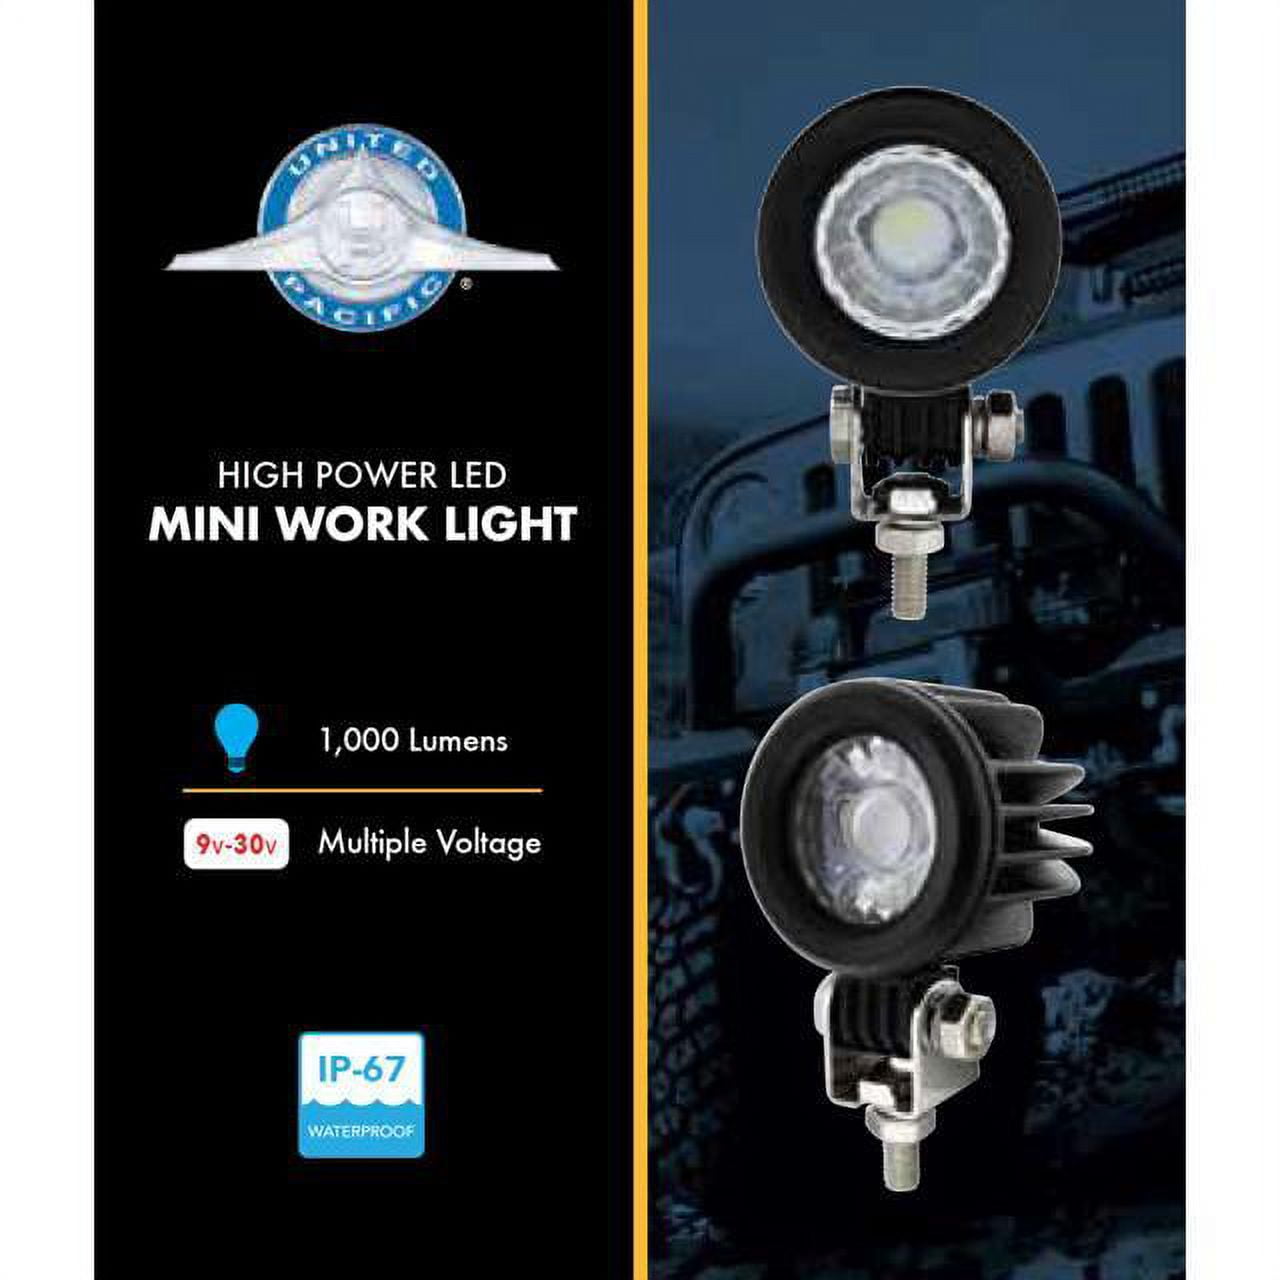 High Power LED Mini Work Light 9V-30V 1000 Lumens